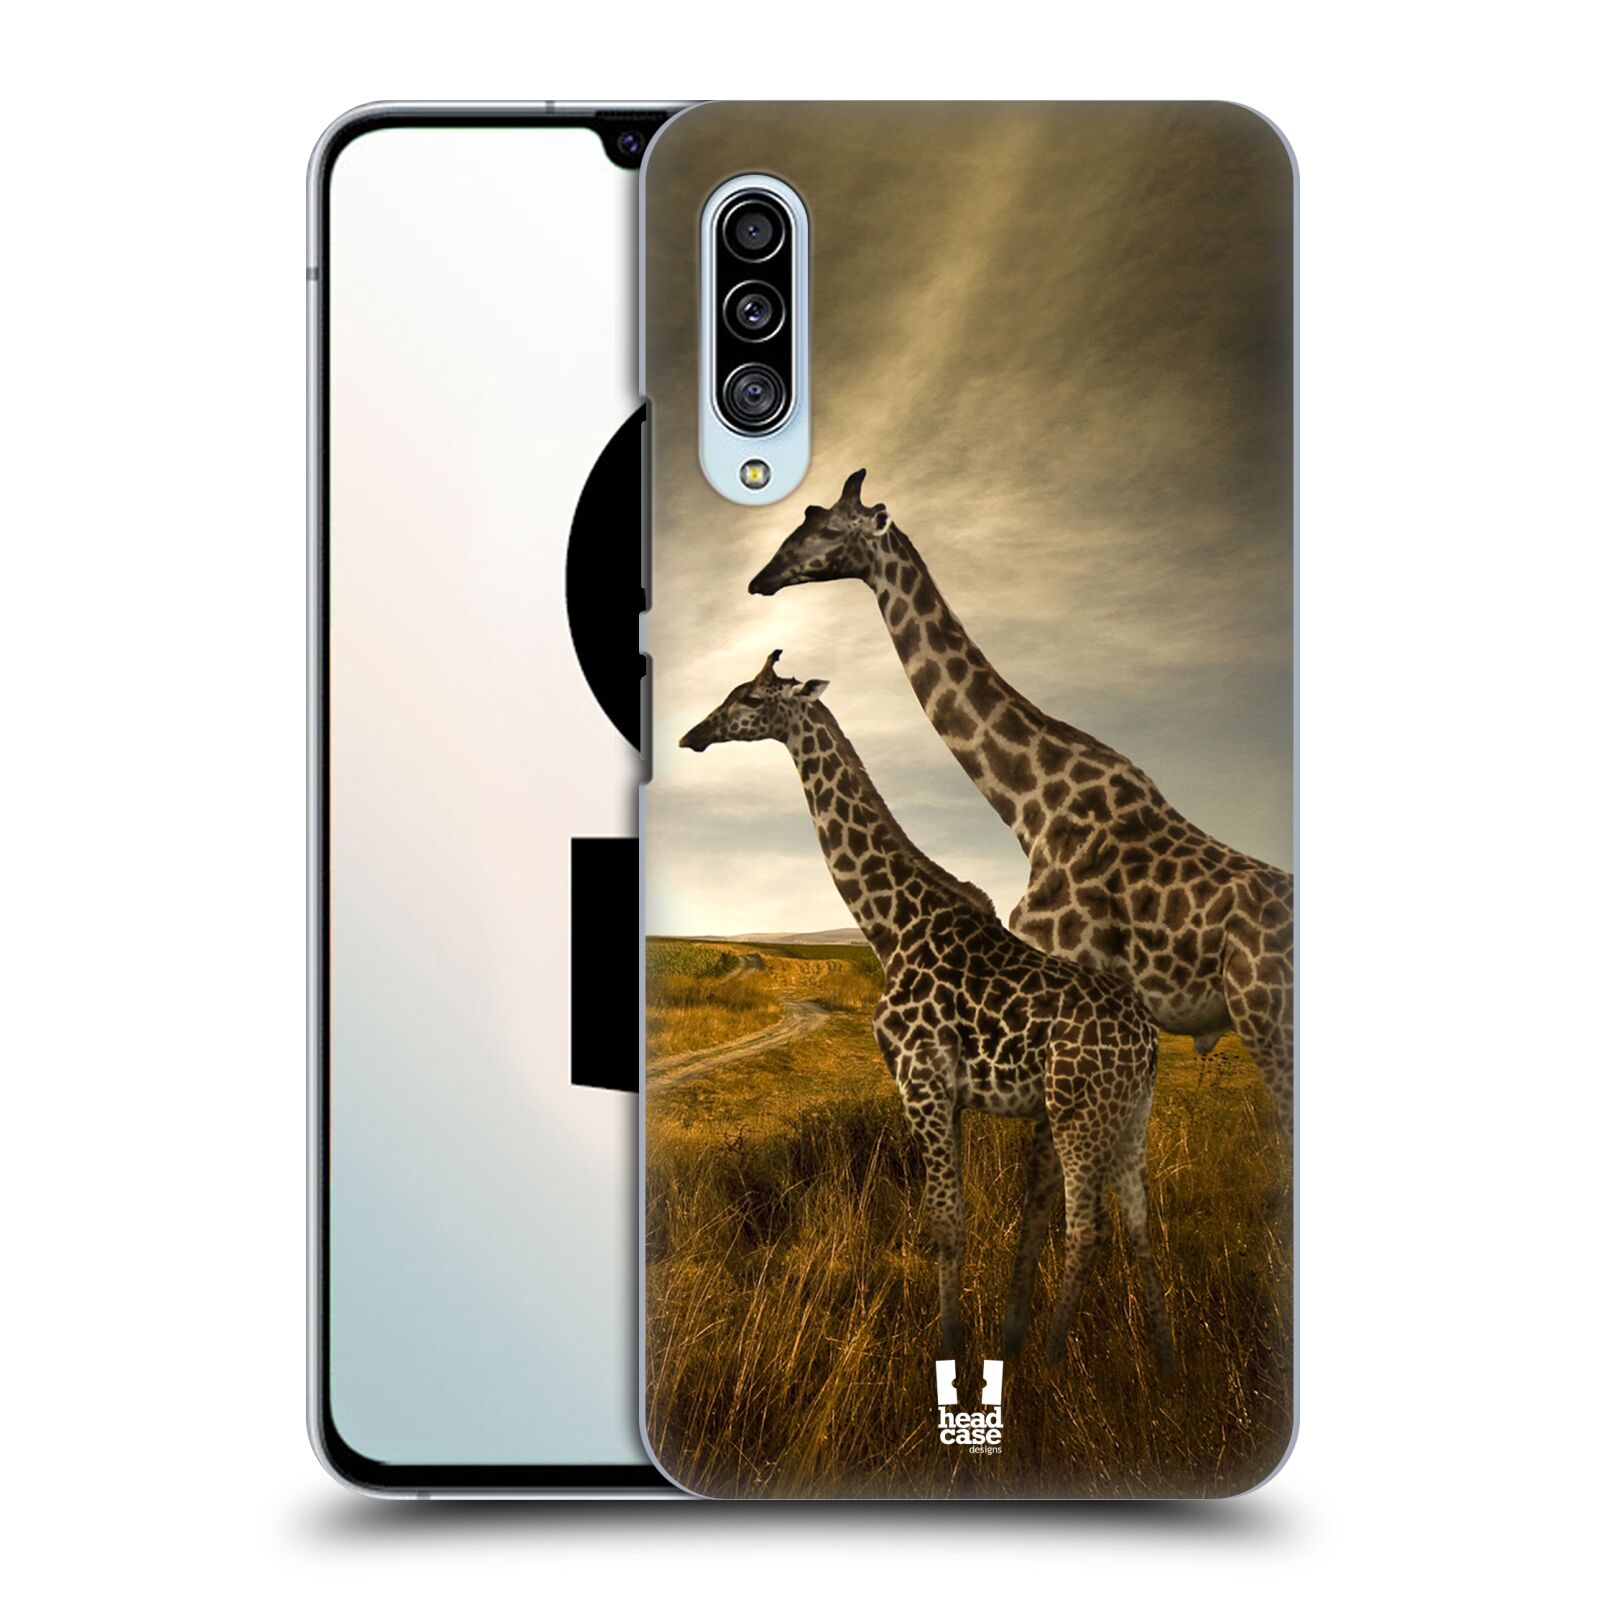 Zadní obal pro mobil Samsung Galaxy A90 5G - HEAD CASE - Svět zvířat žirafy